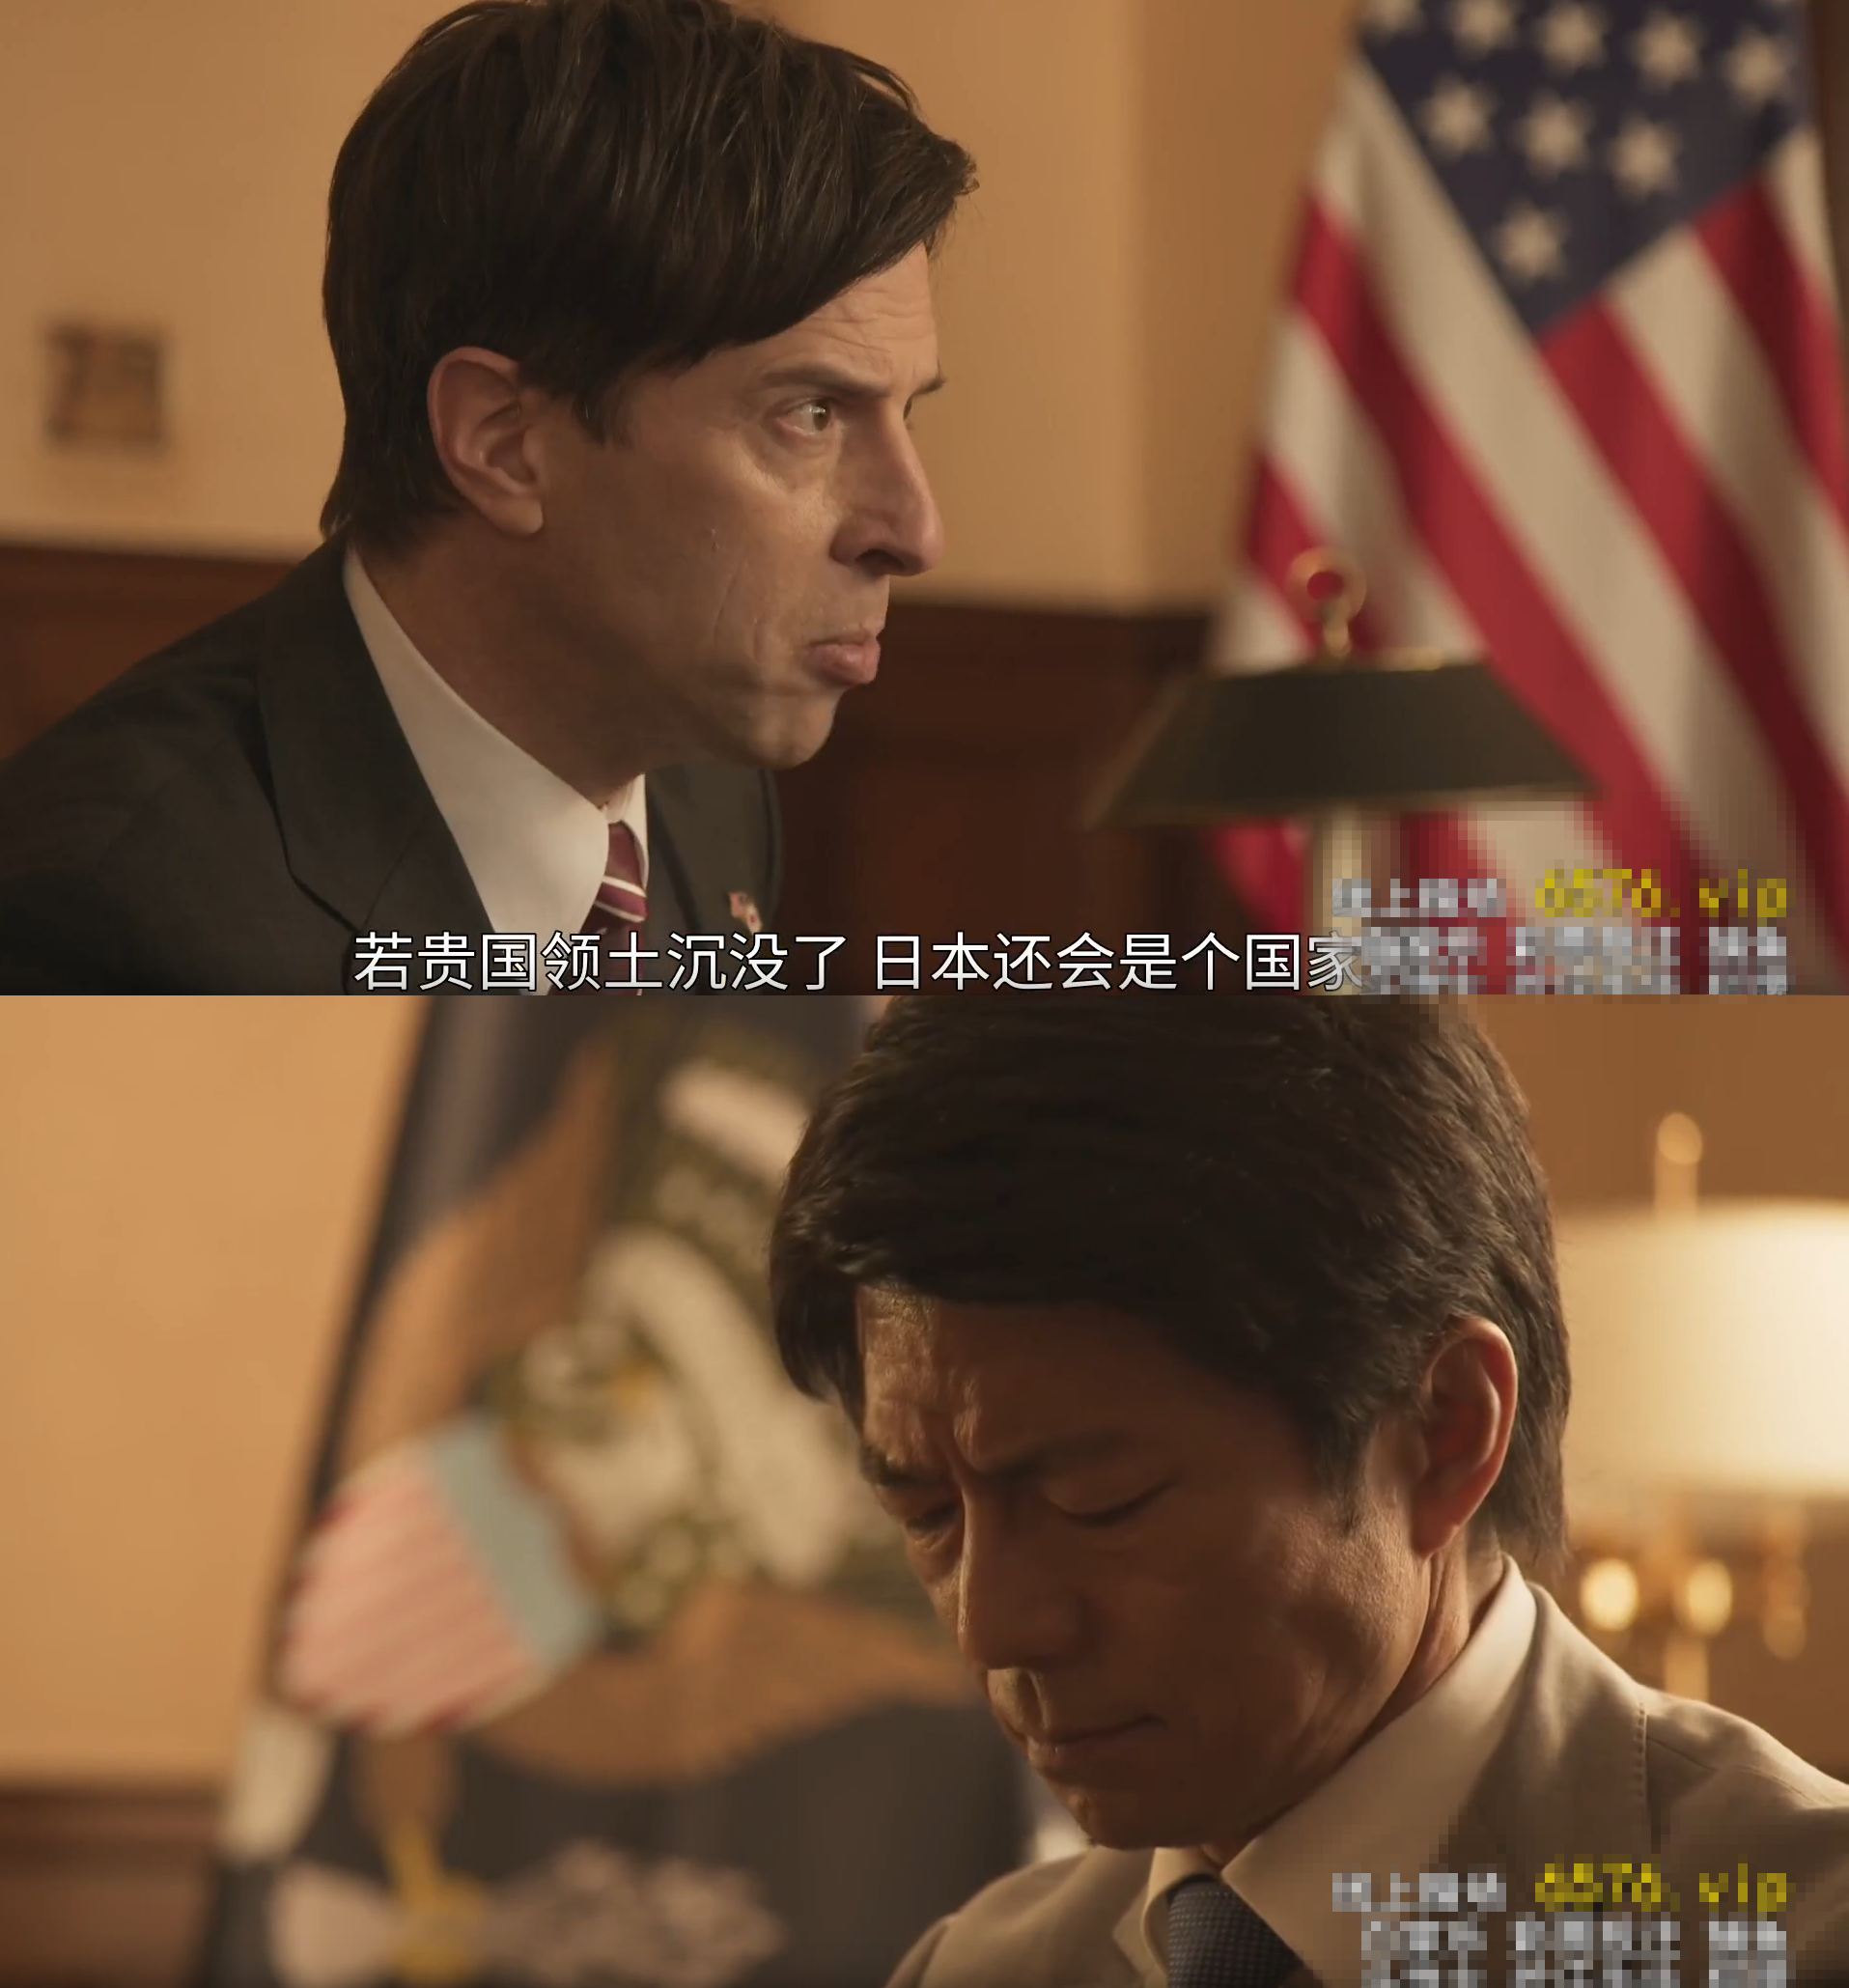 日本已经在中国和美国取得了成绩，日本戏剧“沉默日本 - 希望” - “